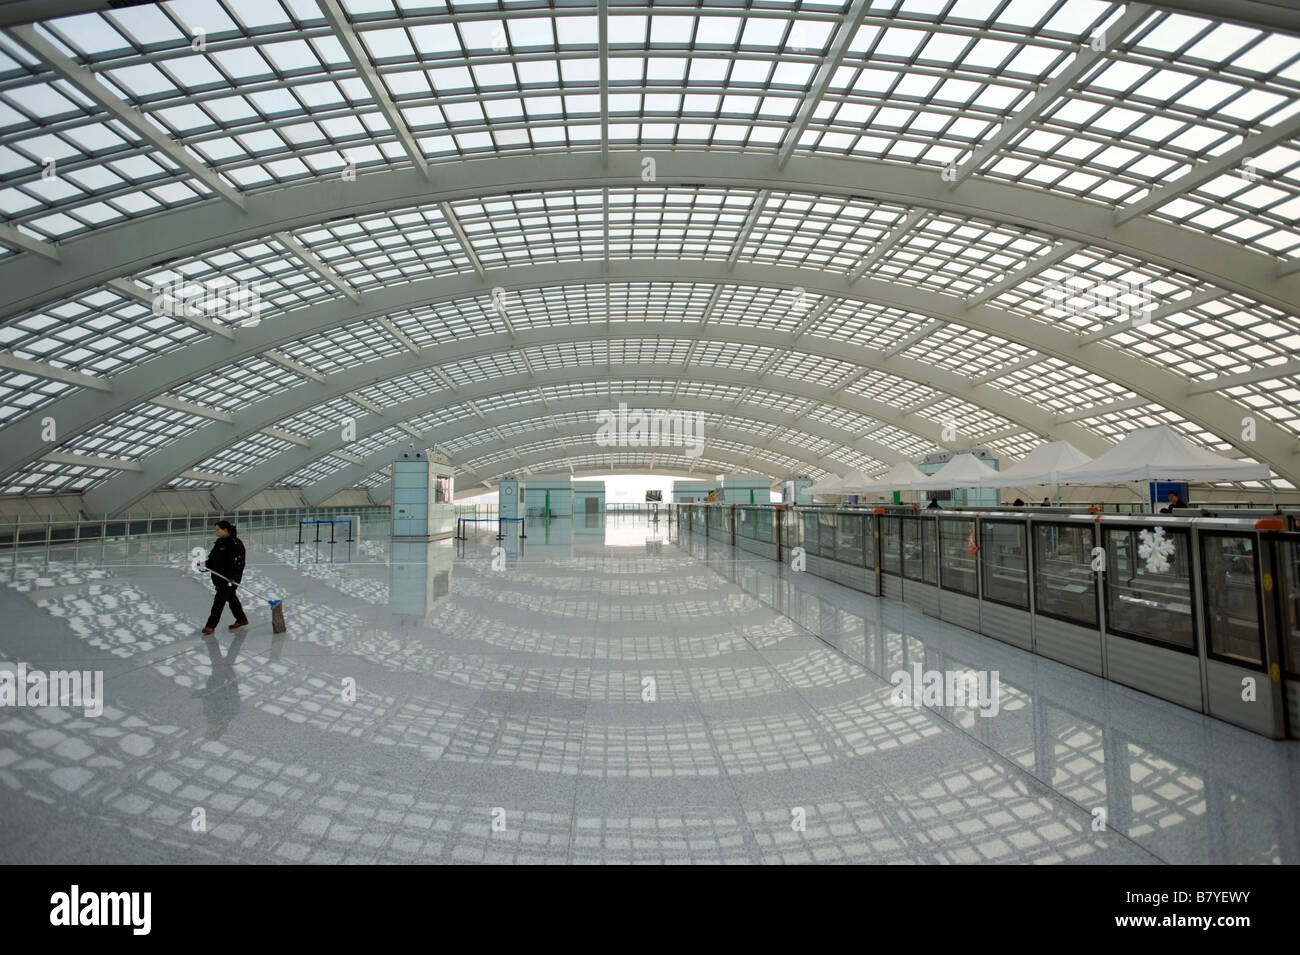 L'intérieur de ce grand hôtel moderne nouvelle borne Airport Express gare à l'aéroport de Pékin la borne 3 Chine 2009 Banque D'Images